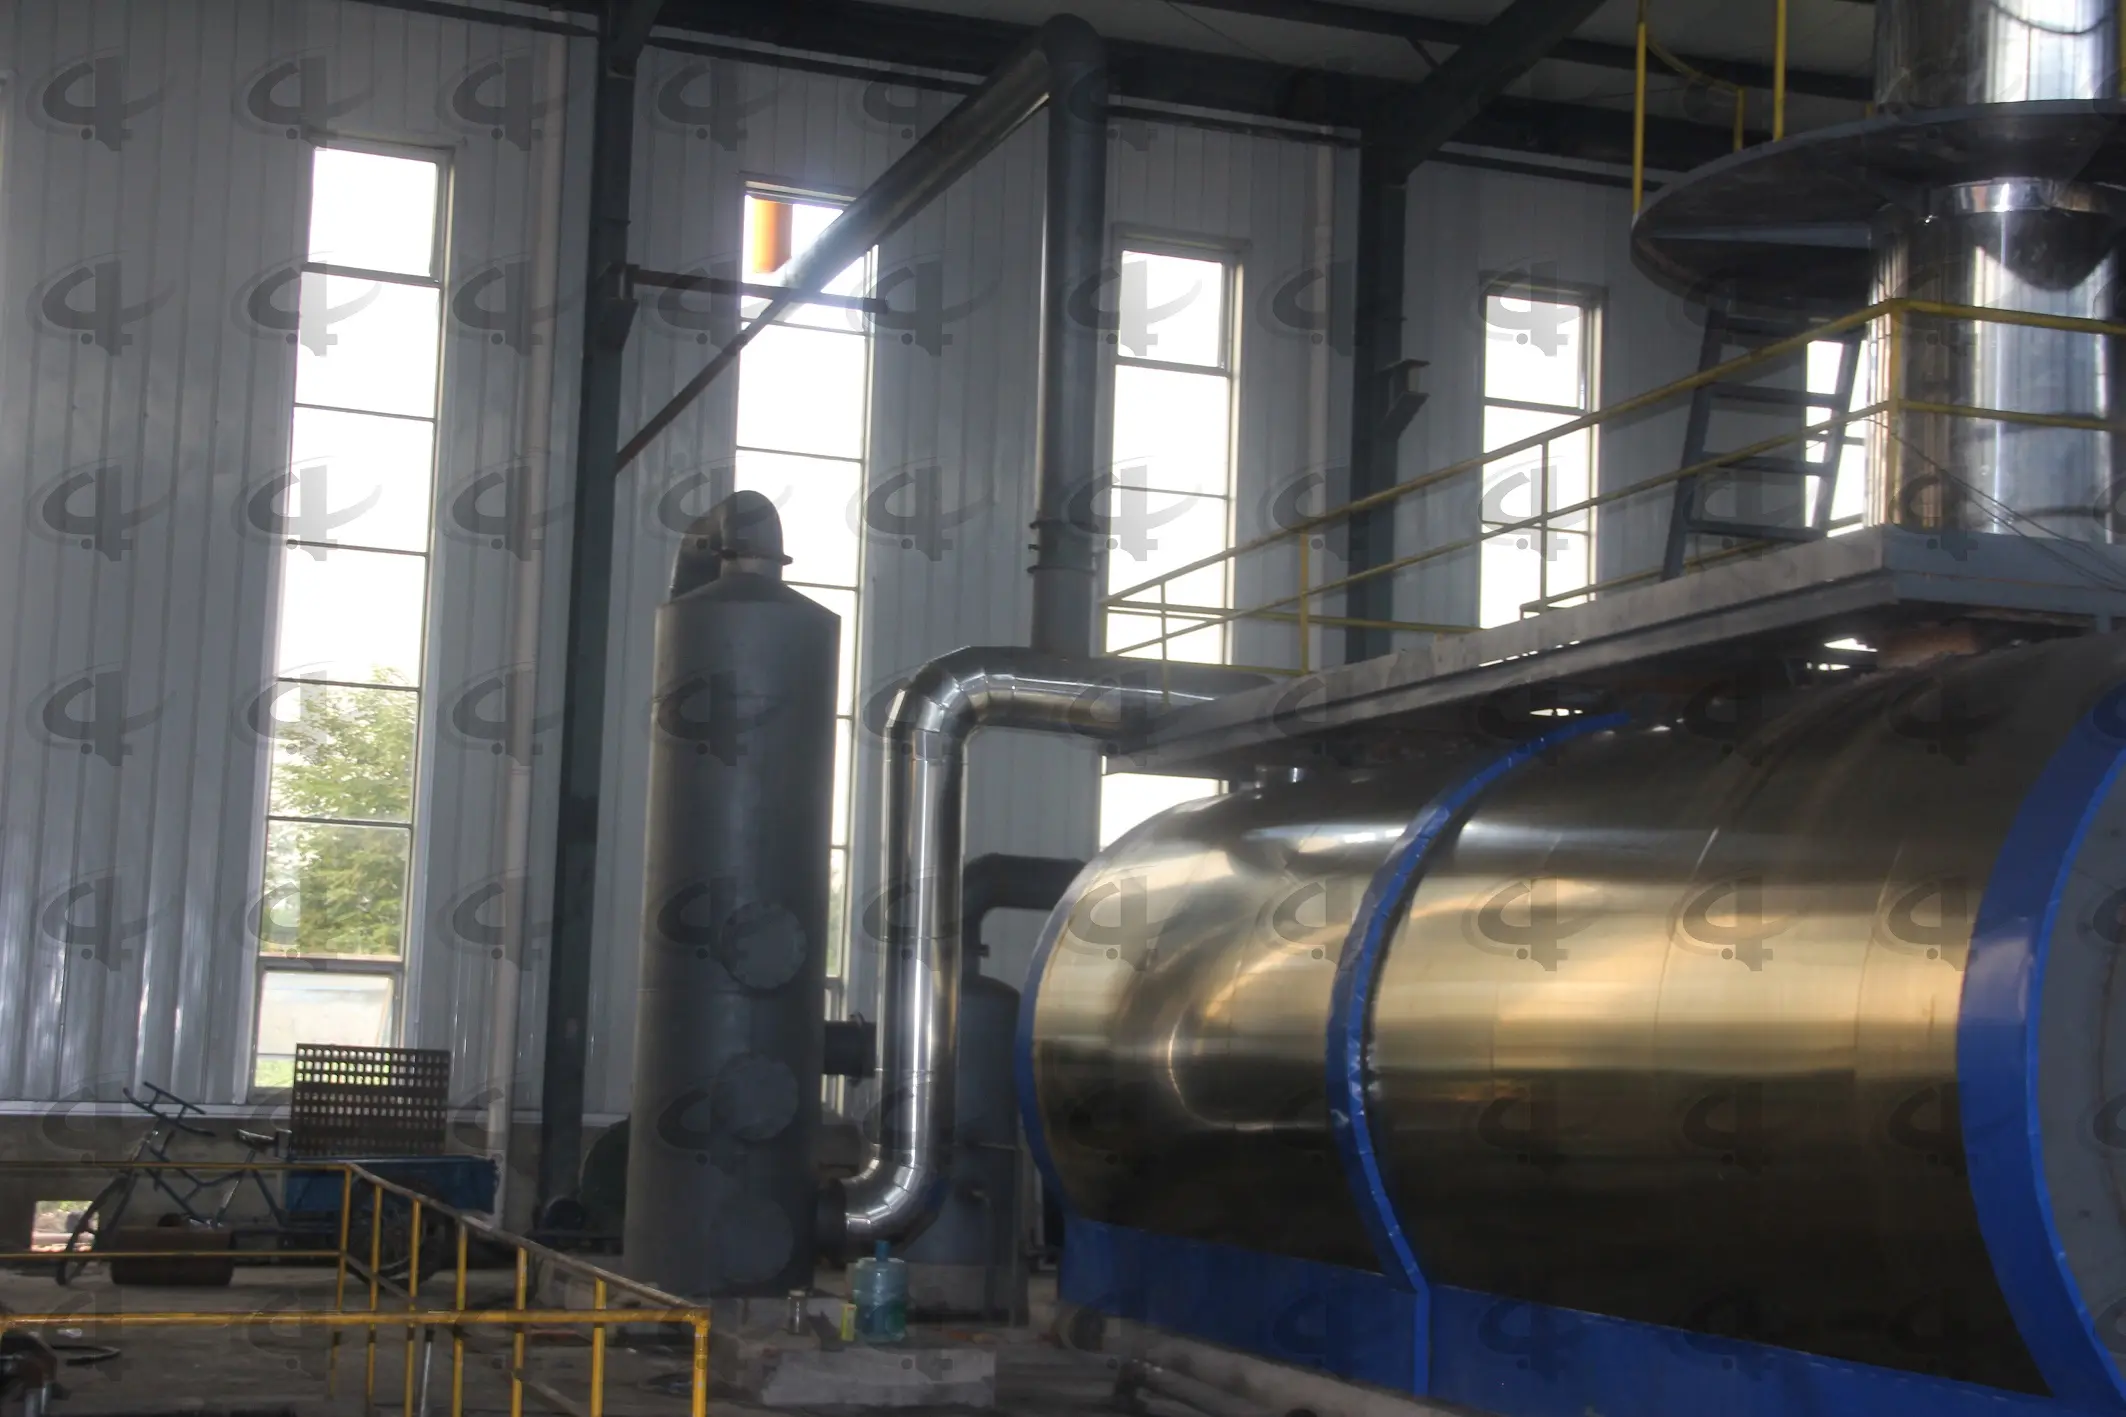 Rohöl raffinerie anlagen abfälle Altöl recycling maschine Pyrolyse öl zur Diesel destillation anlage